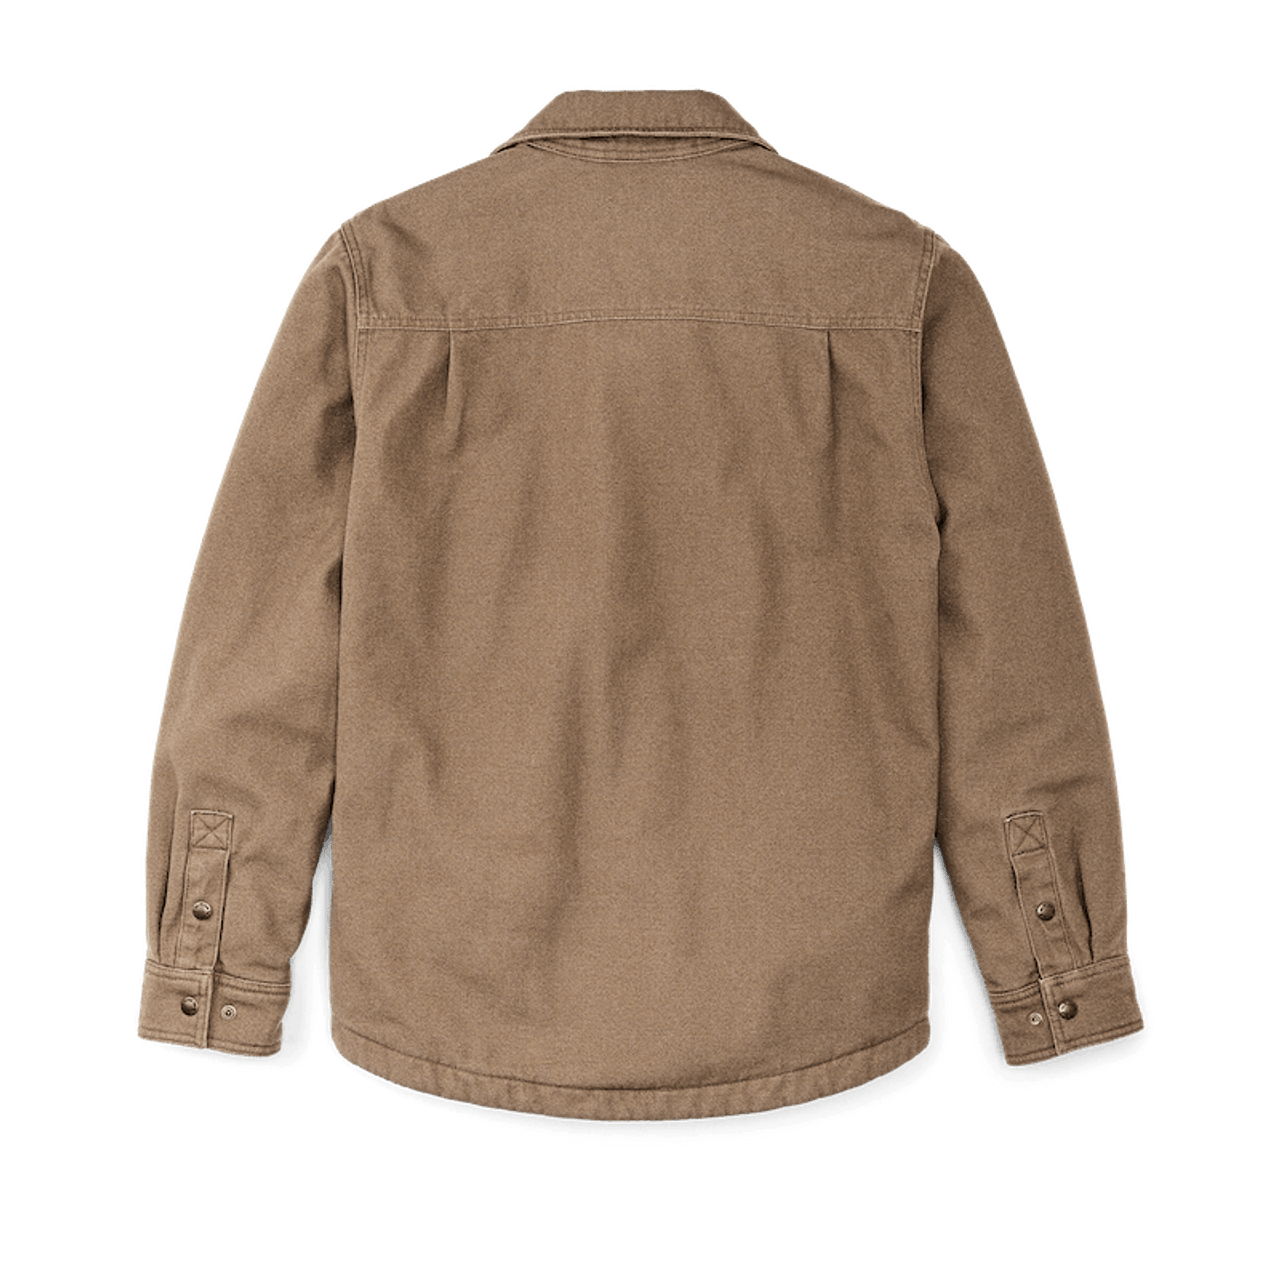 Filson Men's Fleece-Lined Jac-Shirt